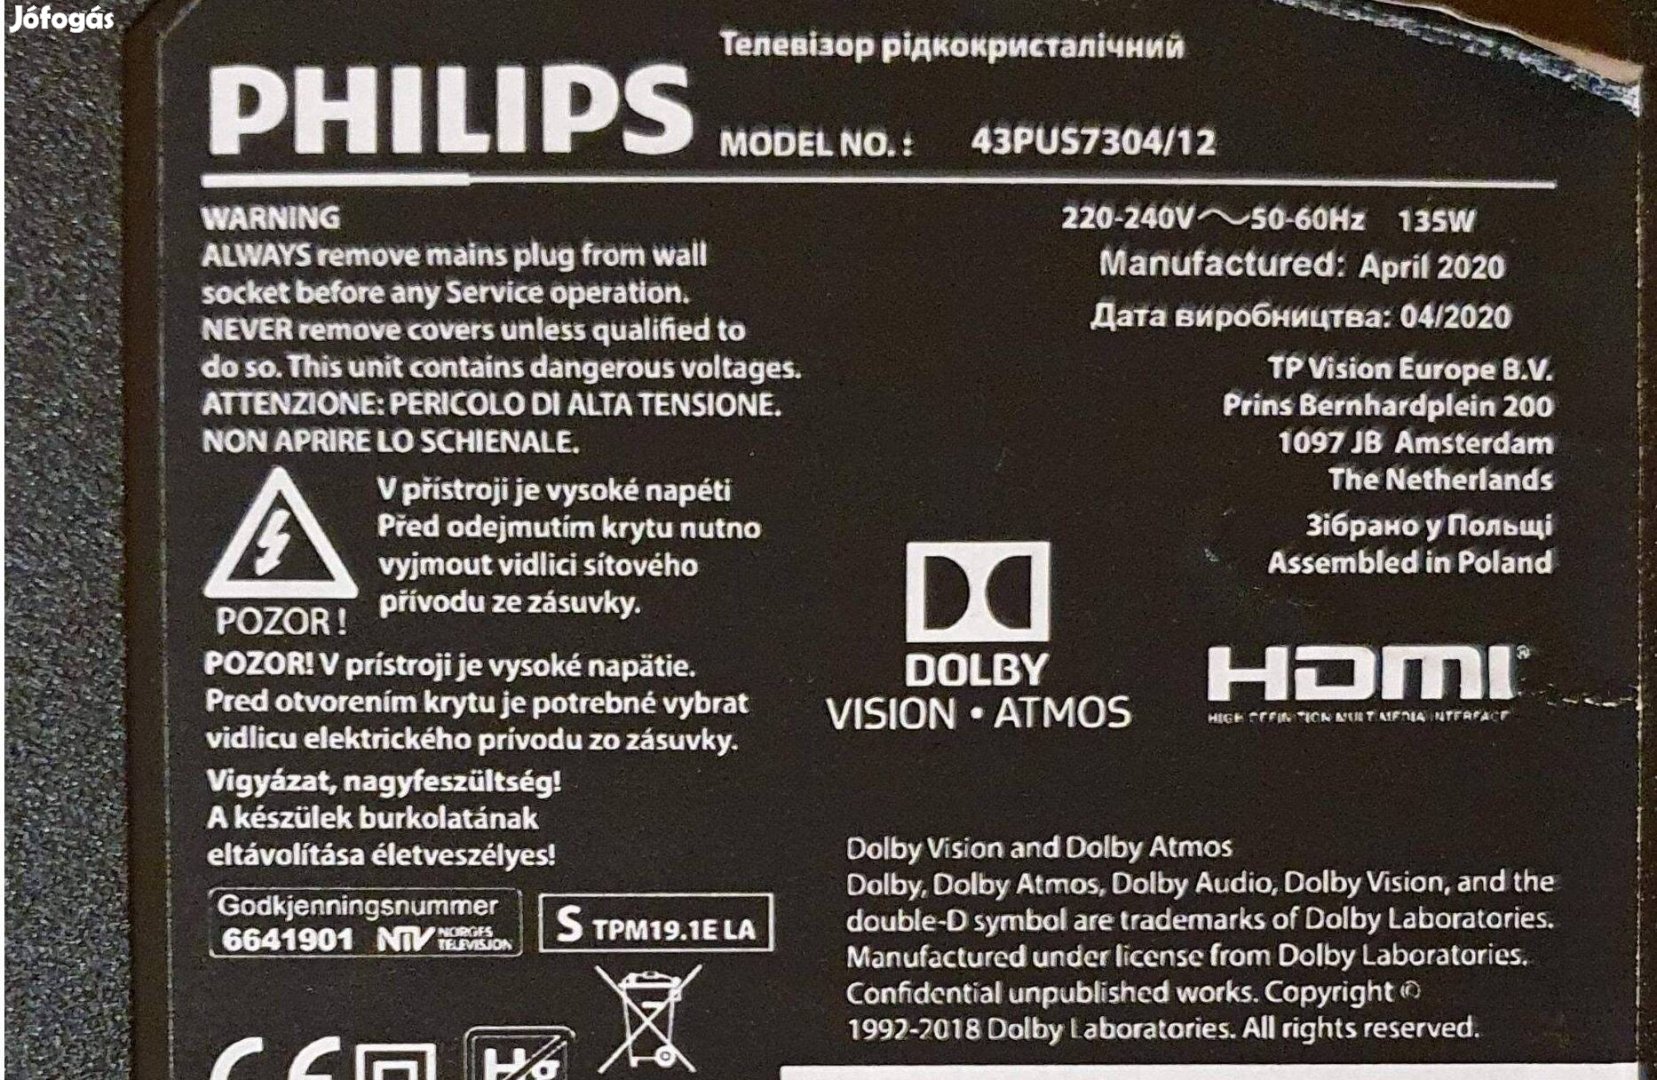 Philips 43Pus7304/12 UHD Smart LED LCD hibás alkatrésznek